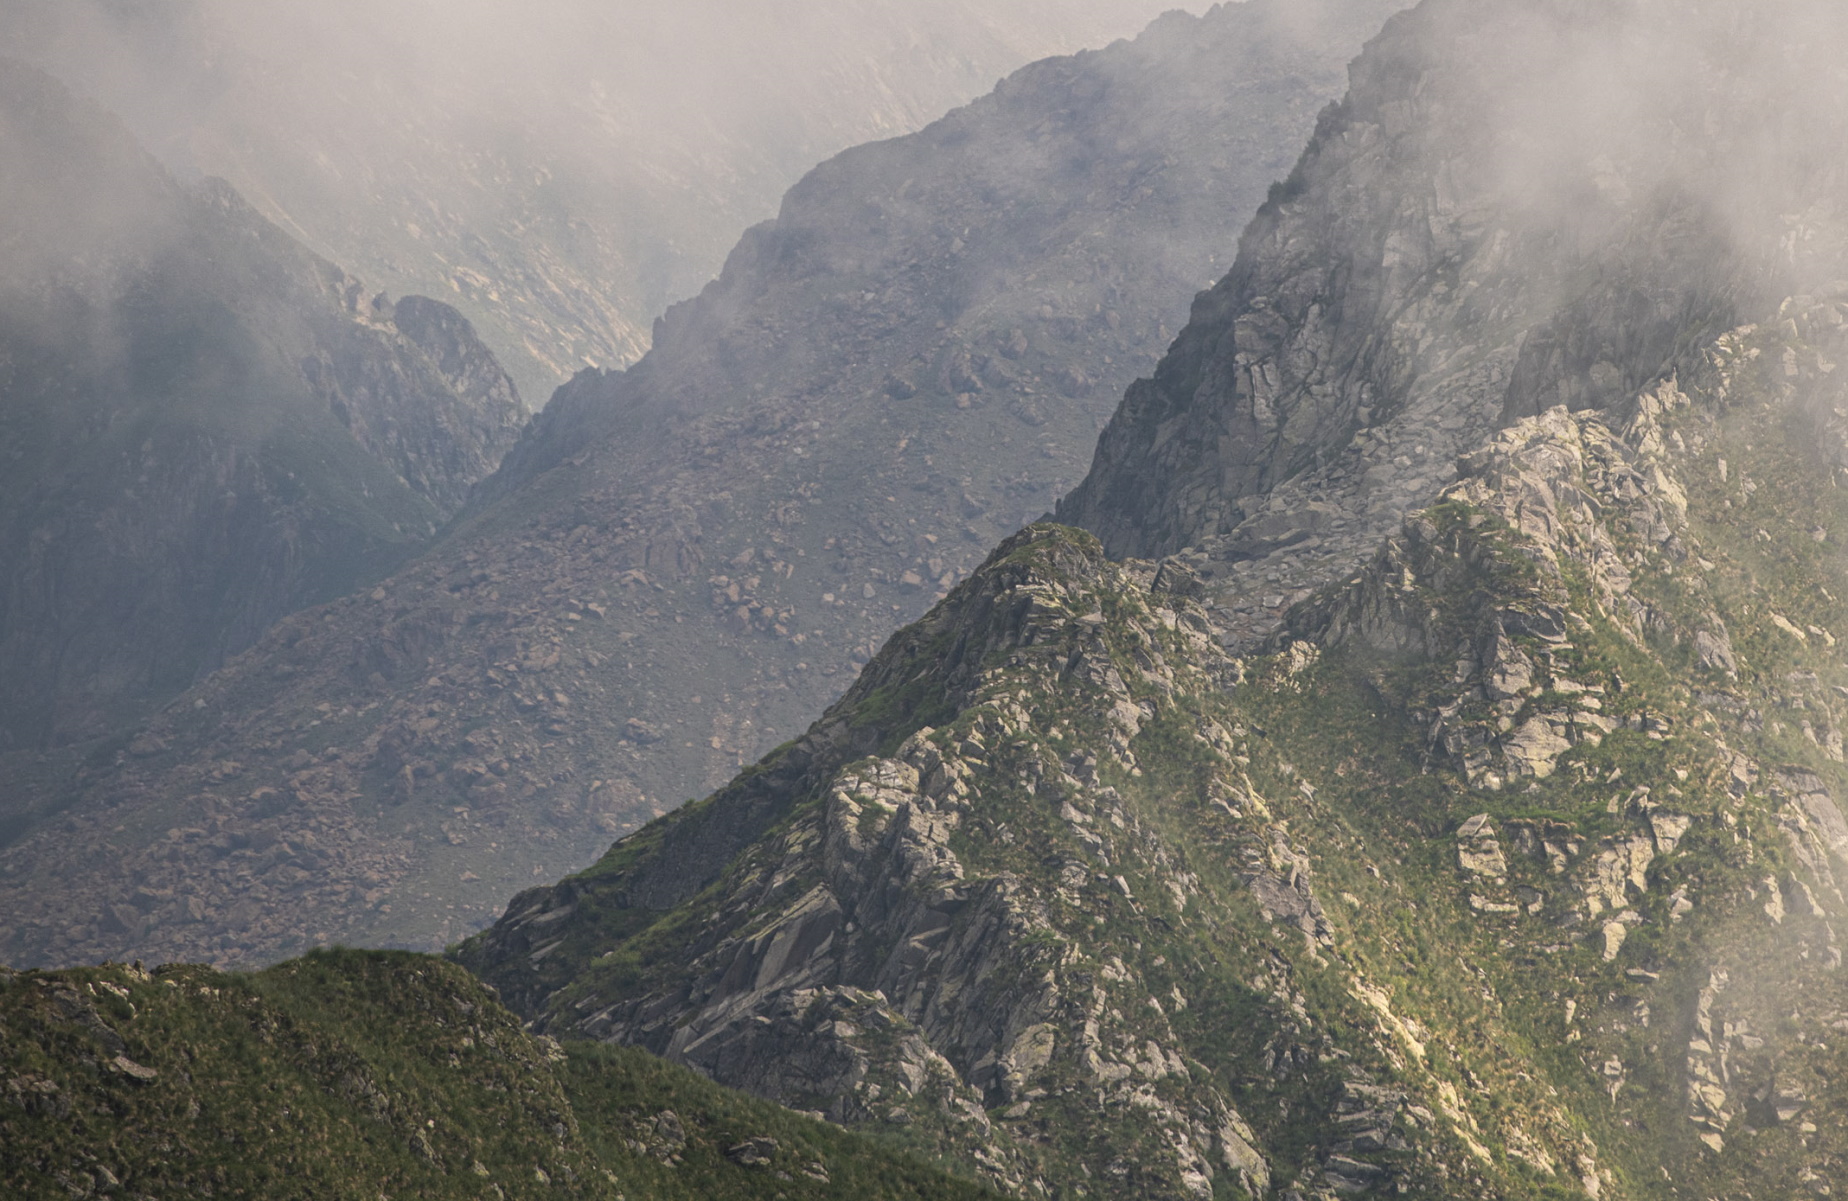 Ελβετία: Εκκενώνεται χωριό στους πρόποδες των Άλπεων επειδή καταρρέει βουνό που το σκεπάζει